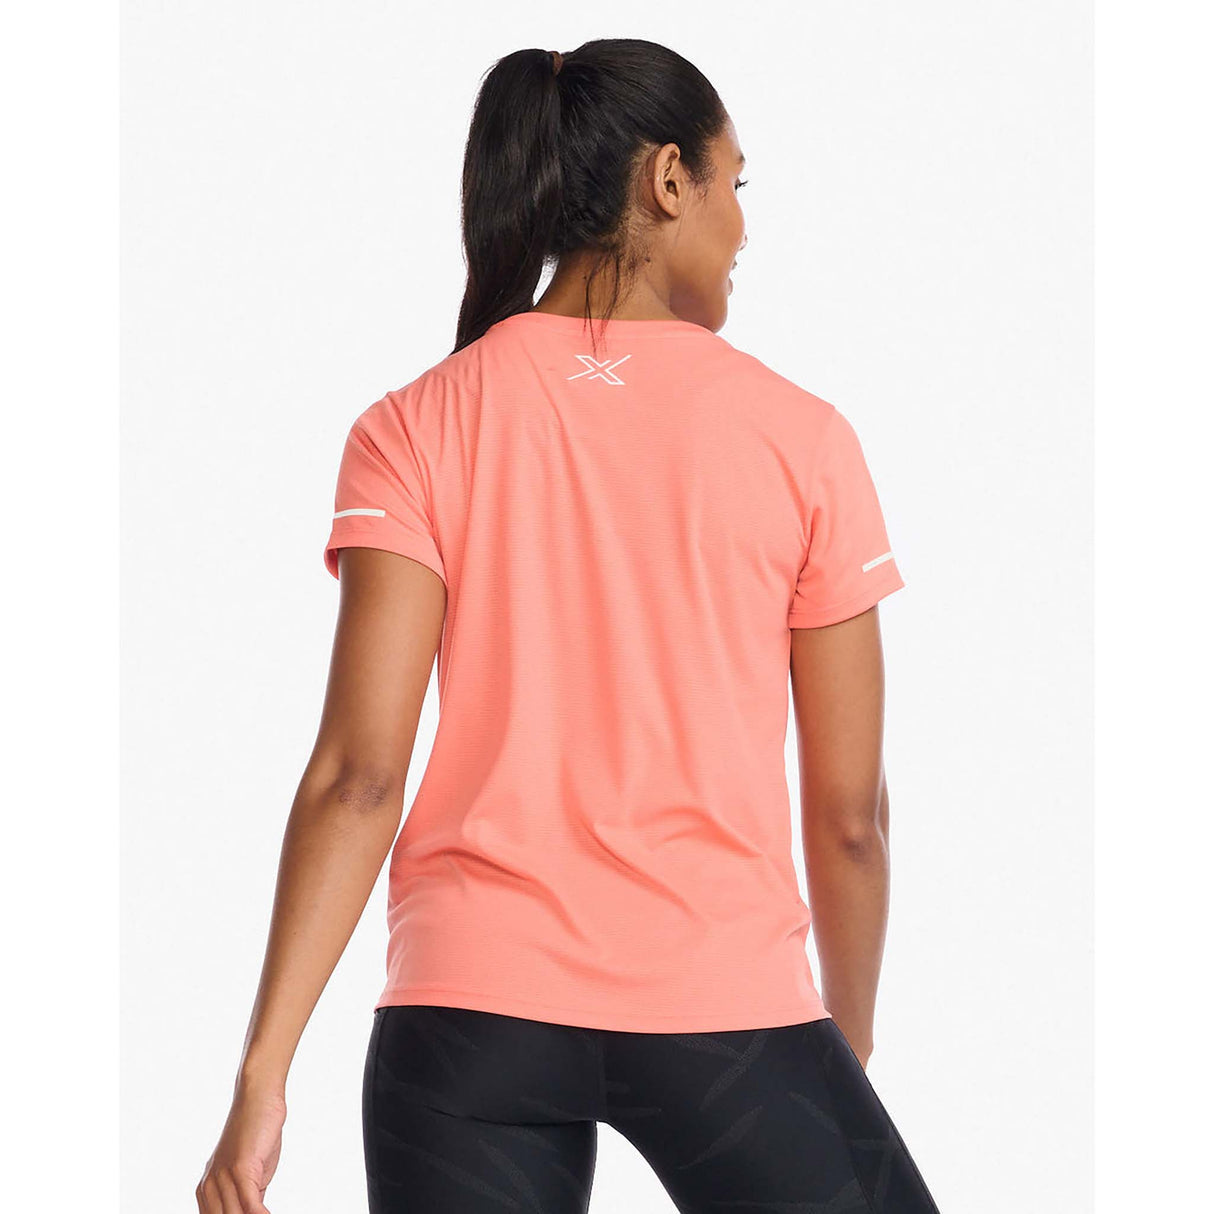 2XU Aero Tee t-shirt de course à pied hypercoral femme dos